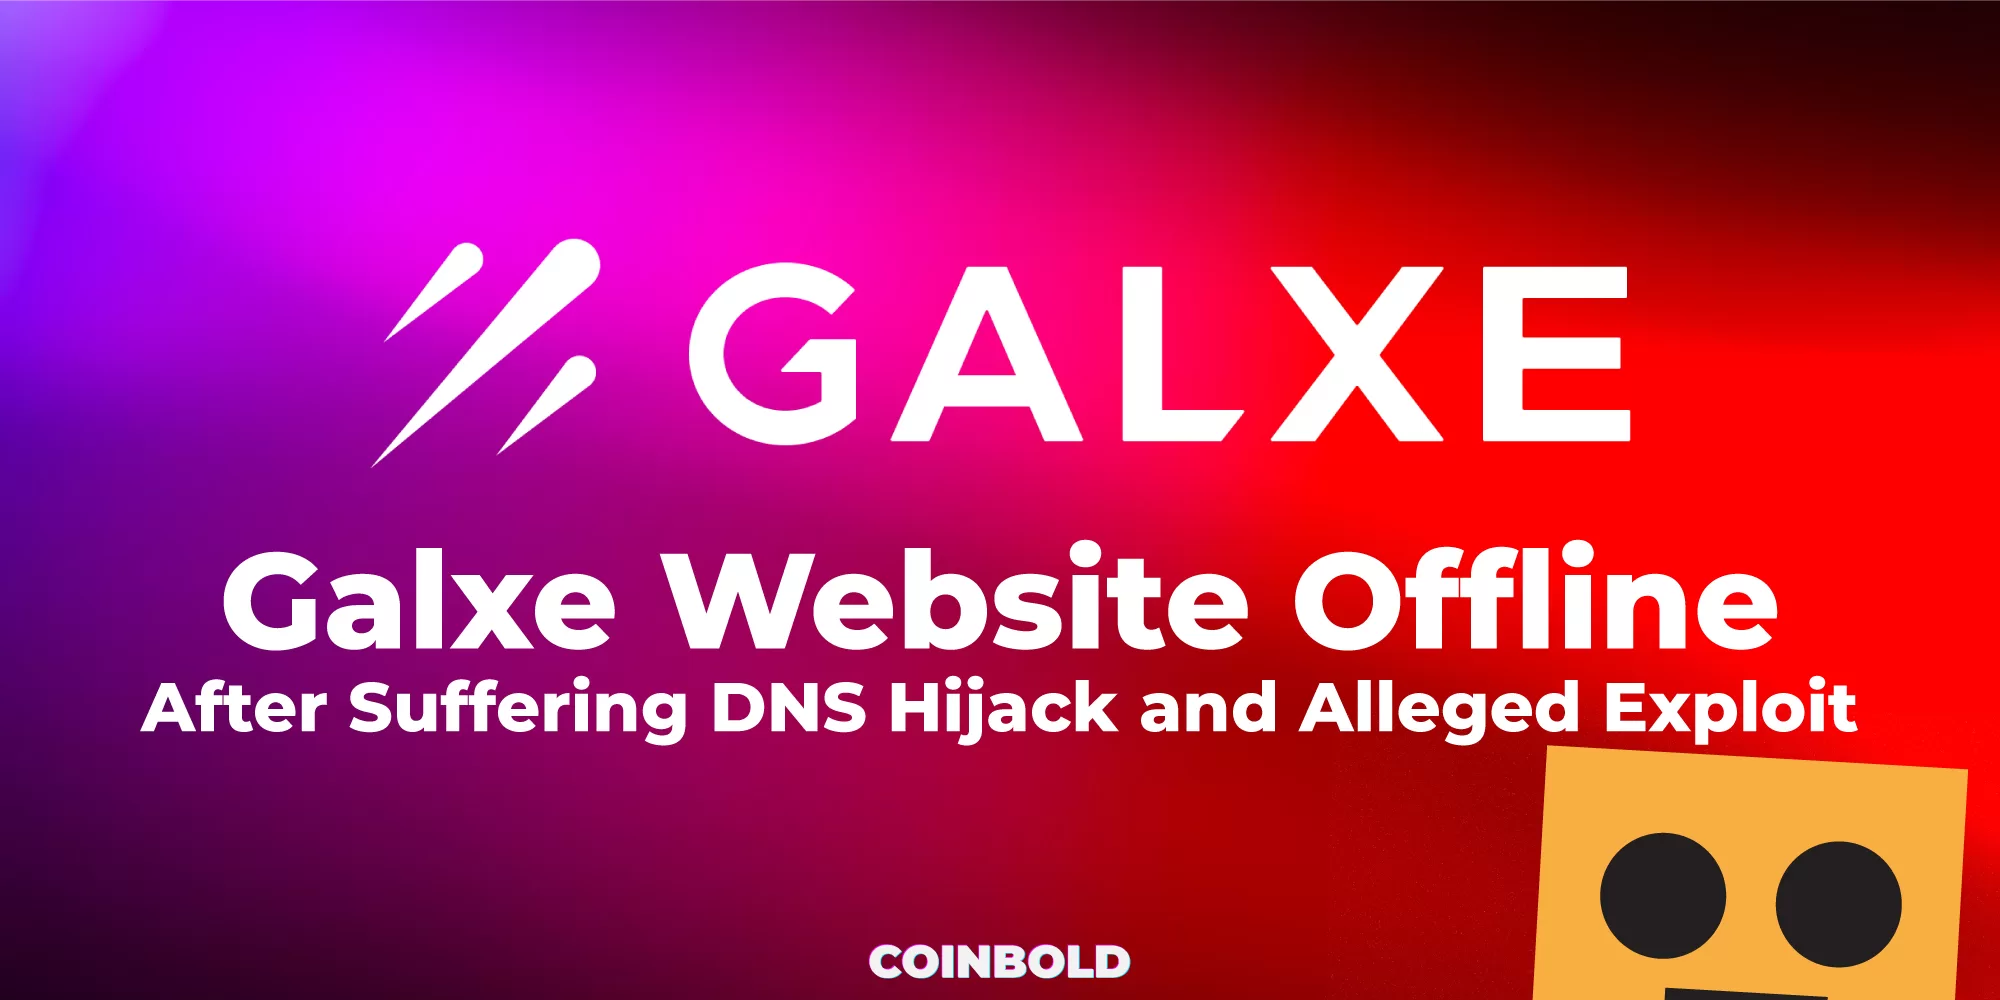 Trang web Galxe ngoại tuyến sau khi bị tấn công DNS và bị cáo buộc khai thác